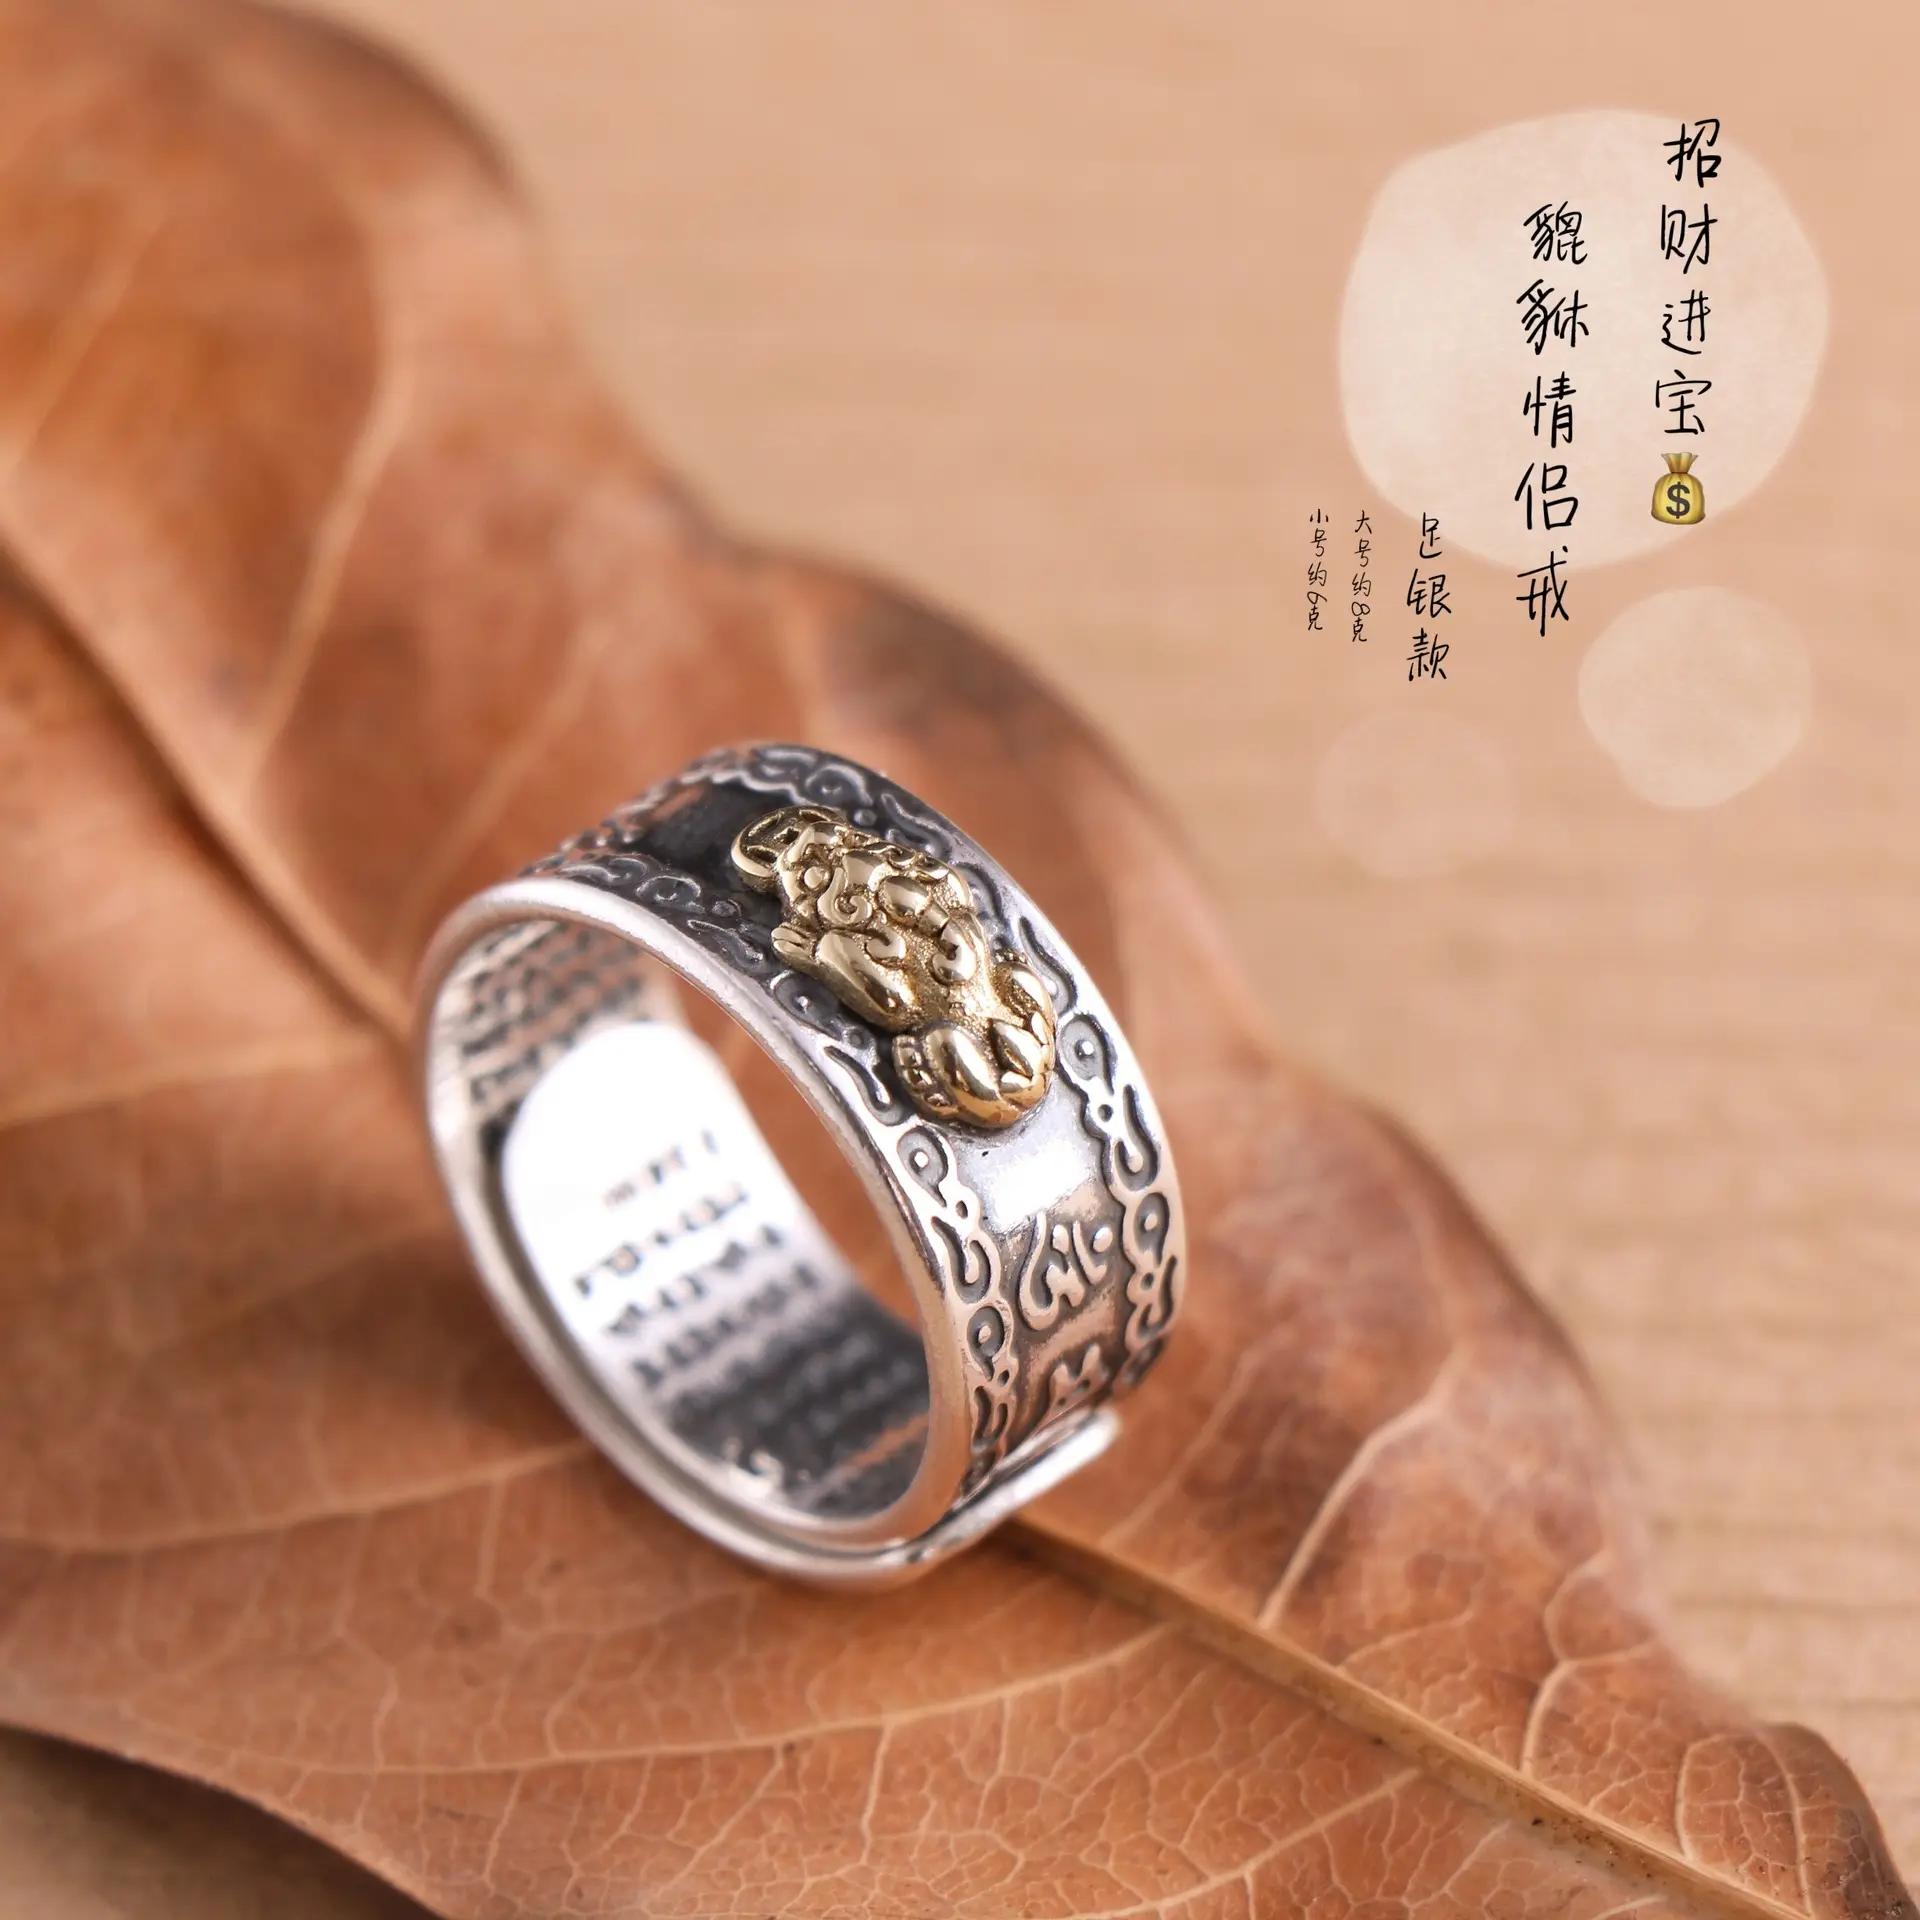 แหวนเครื่องประดับเงินสเตอร์ลิงปี่เซี่ยหกคำ,แหวนคู่เสริมฮวงจุ้ยแหวนคู่เครื่องประดับศาสนาพุทธสำหรับผู้หญิงและผู้ชาย